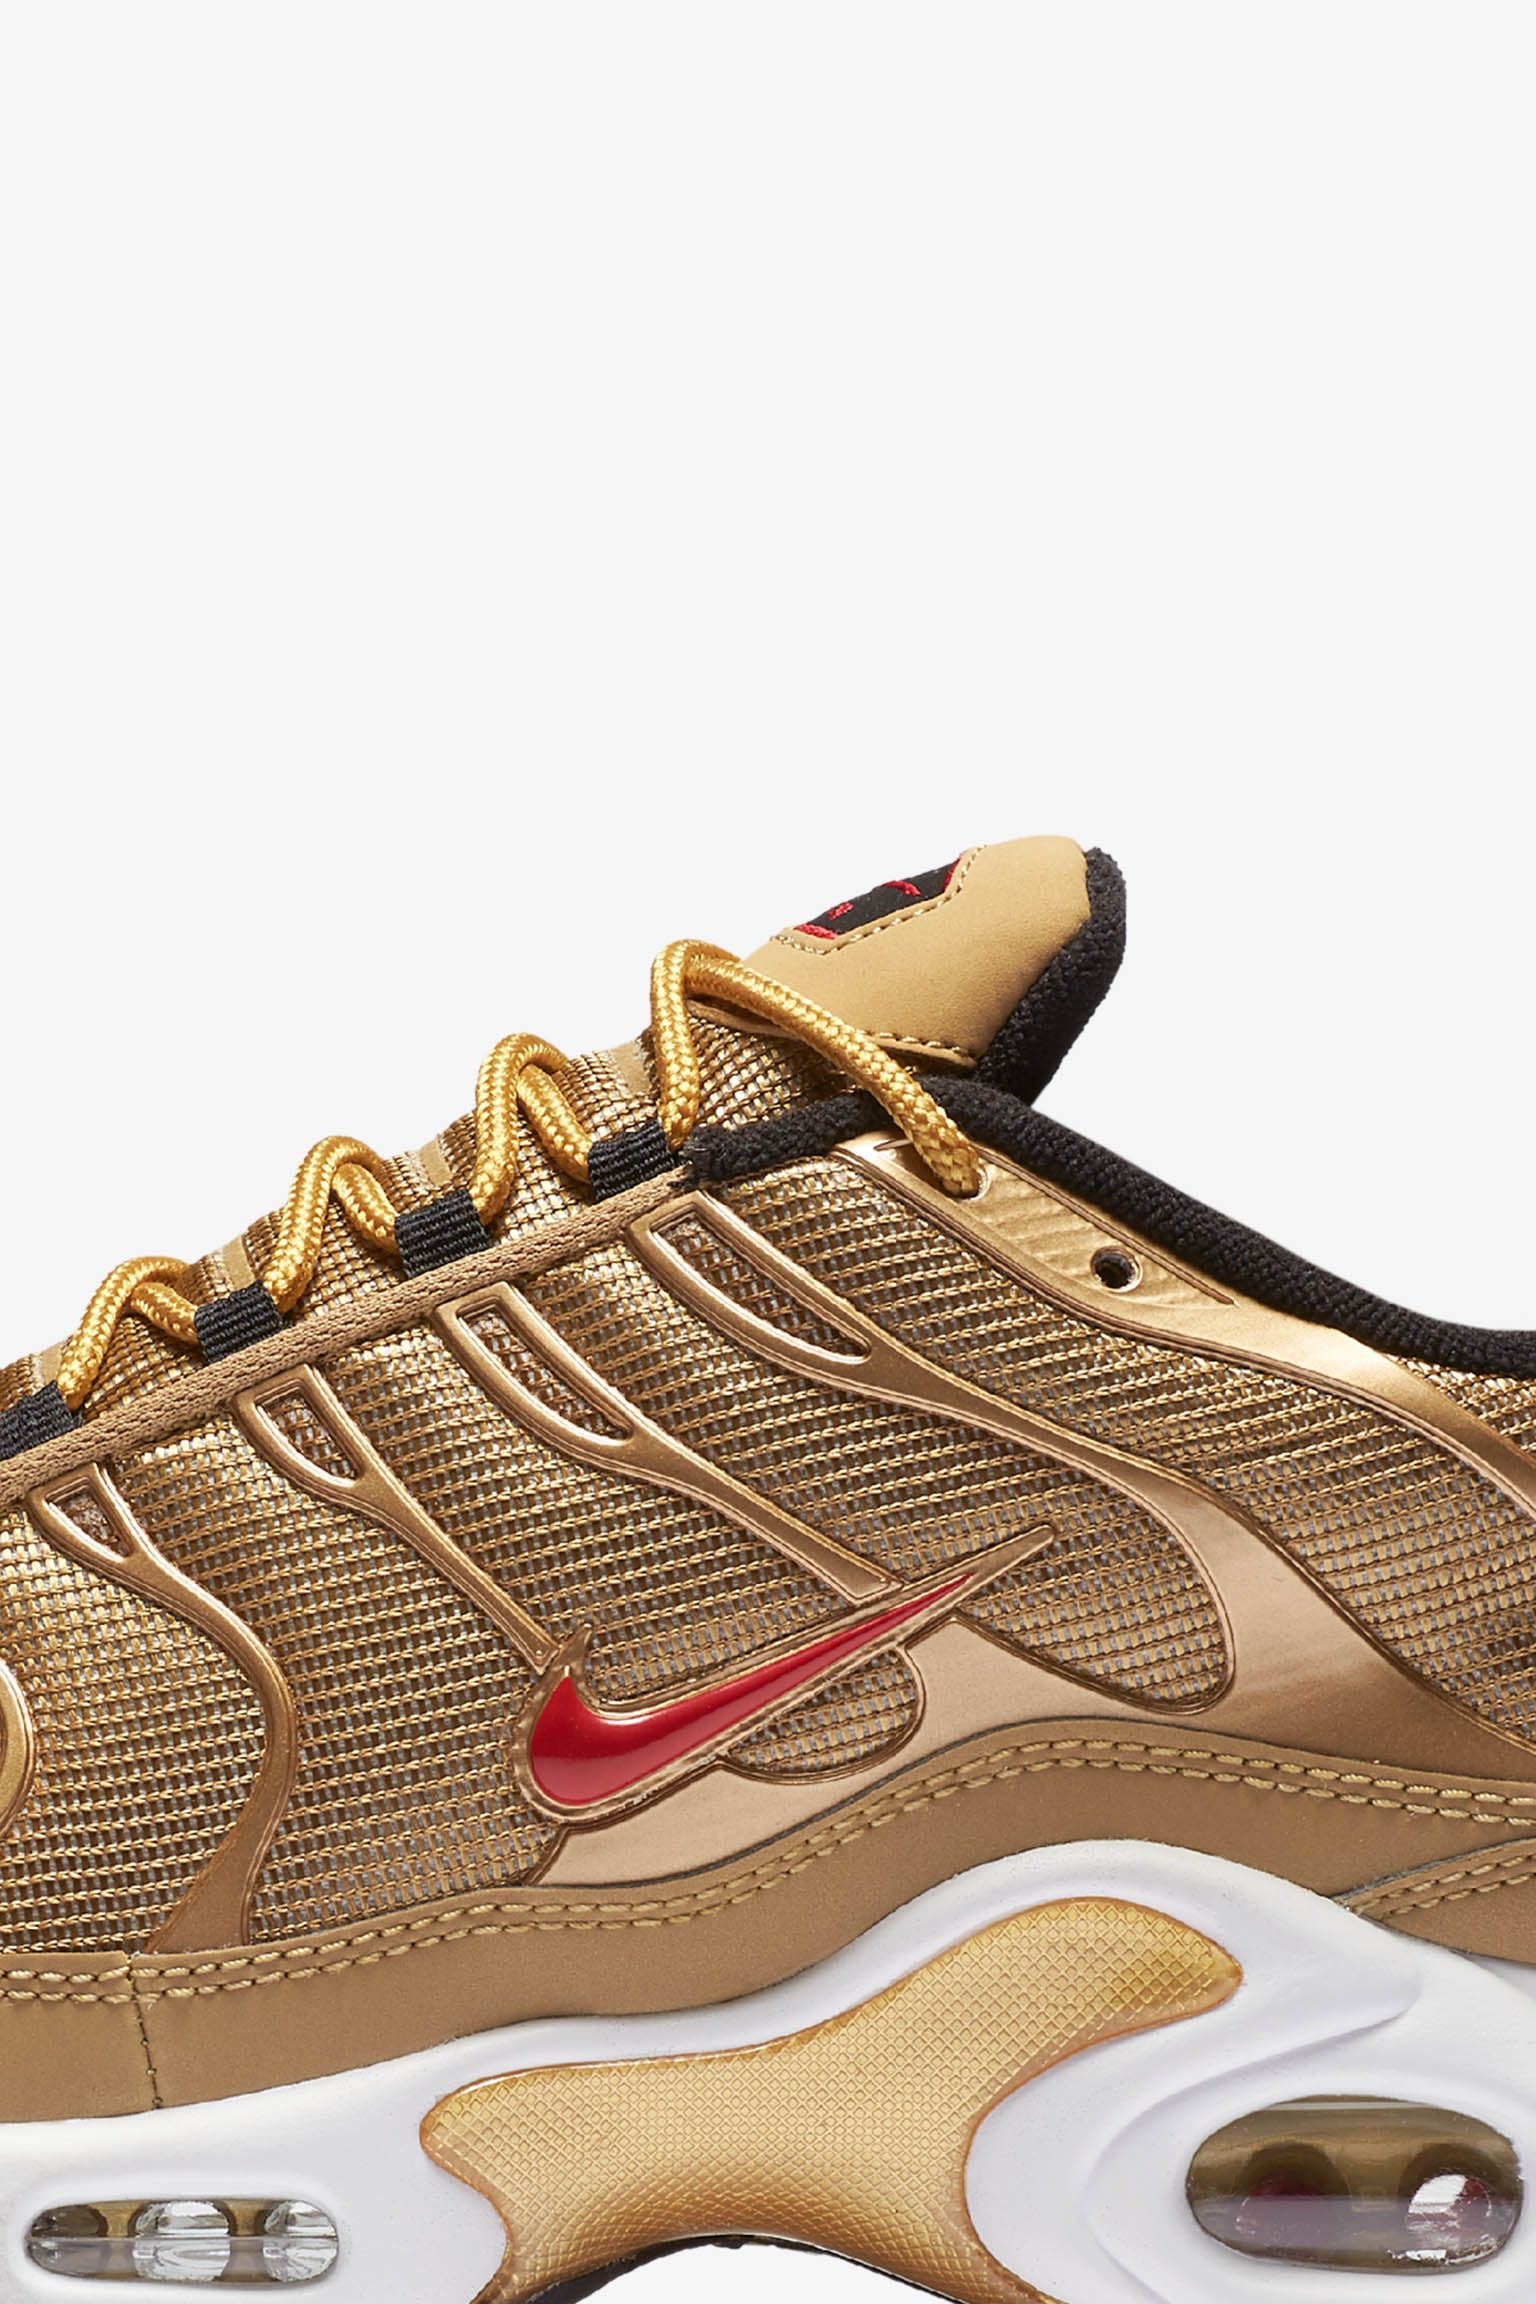 حفرة المندي Nike Air Max Plus 'Metallic Gold' Release Date. Nike SNKRS حفرة المندي